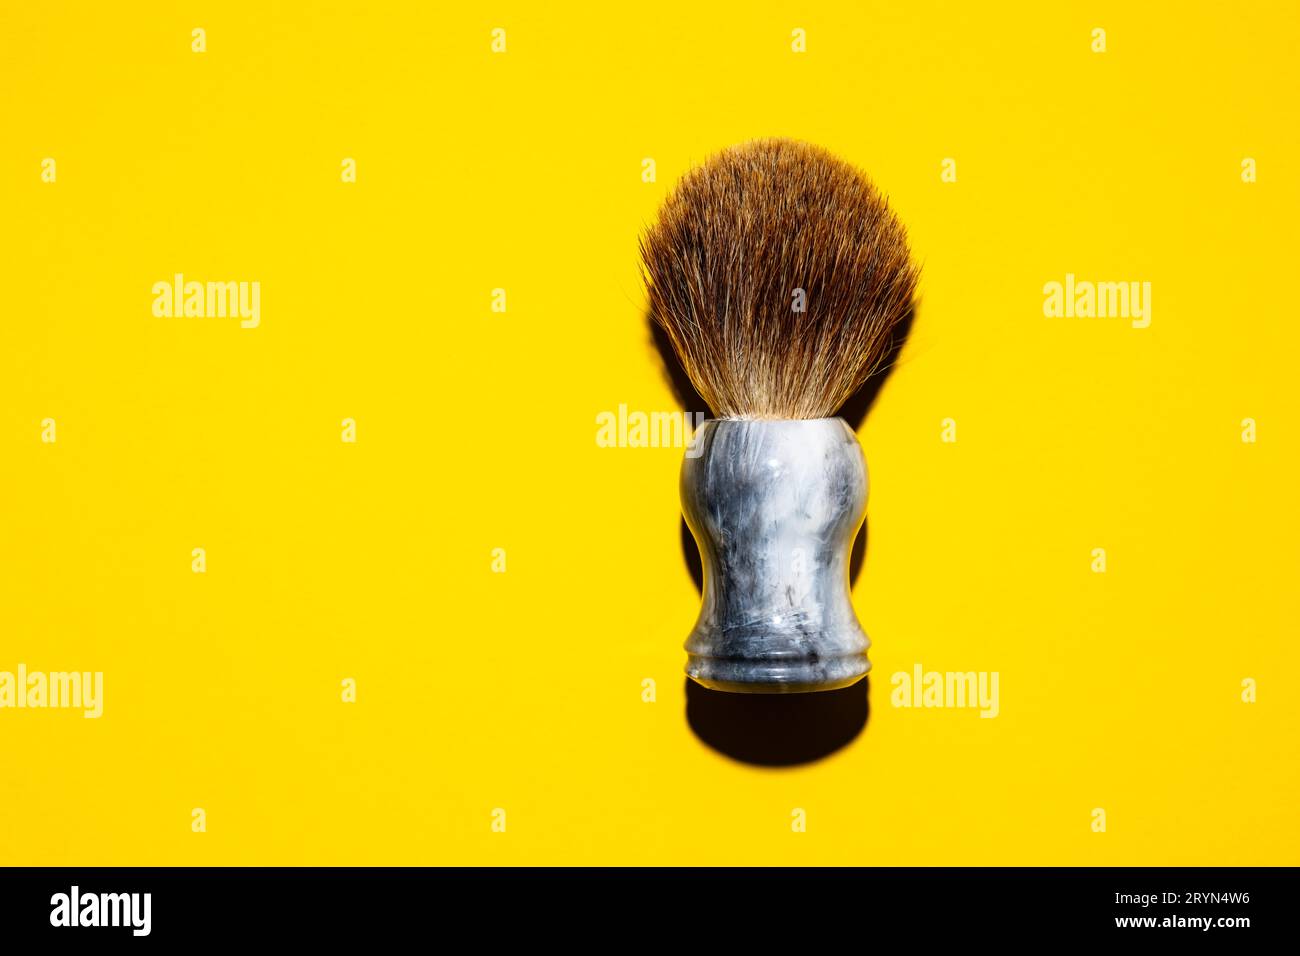 Draufsicht auf einen Rasierpinsel vor einem gelben Hintergrund Stockfoto